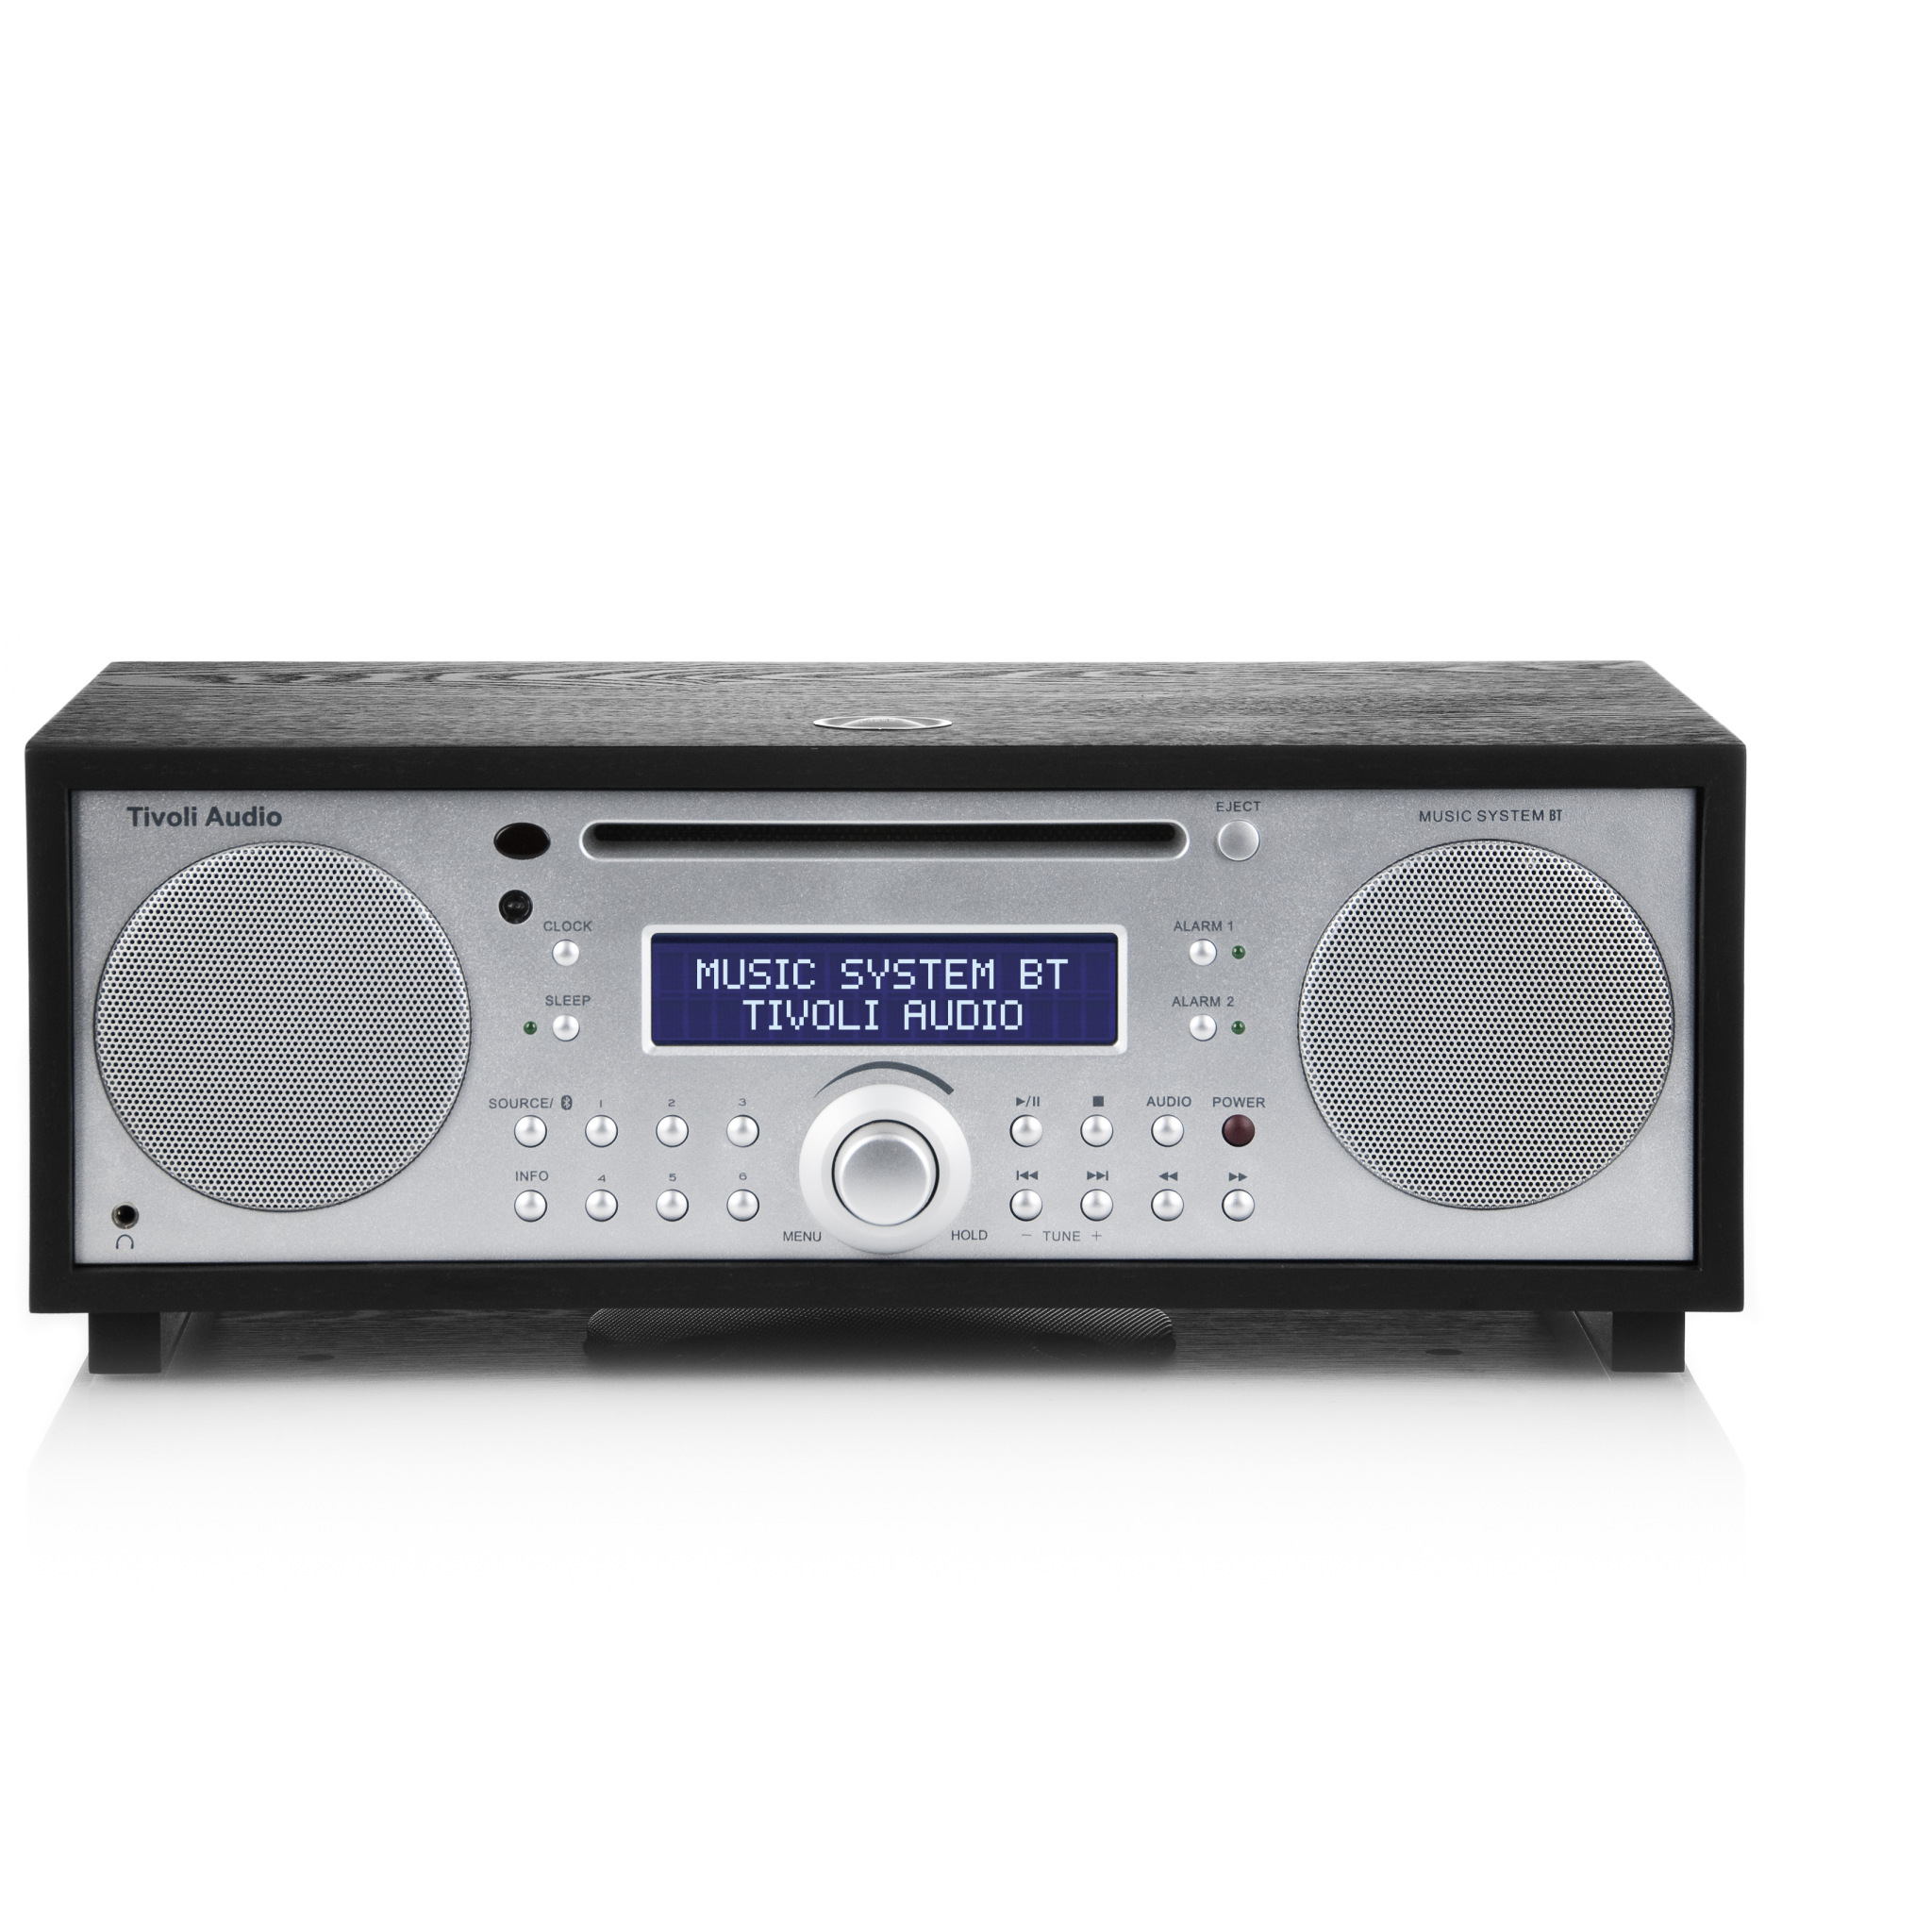 815097014591 Tivoli Audio Music System BT Black Ash/Silver - CD/FM/AM/AUX TV & HIFI,Lyd,Radioer 15400001020 MSYBT-1459-EU